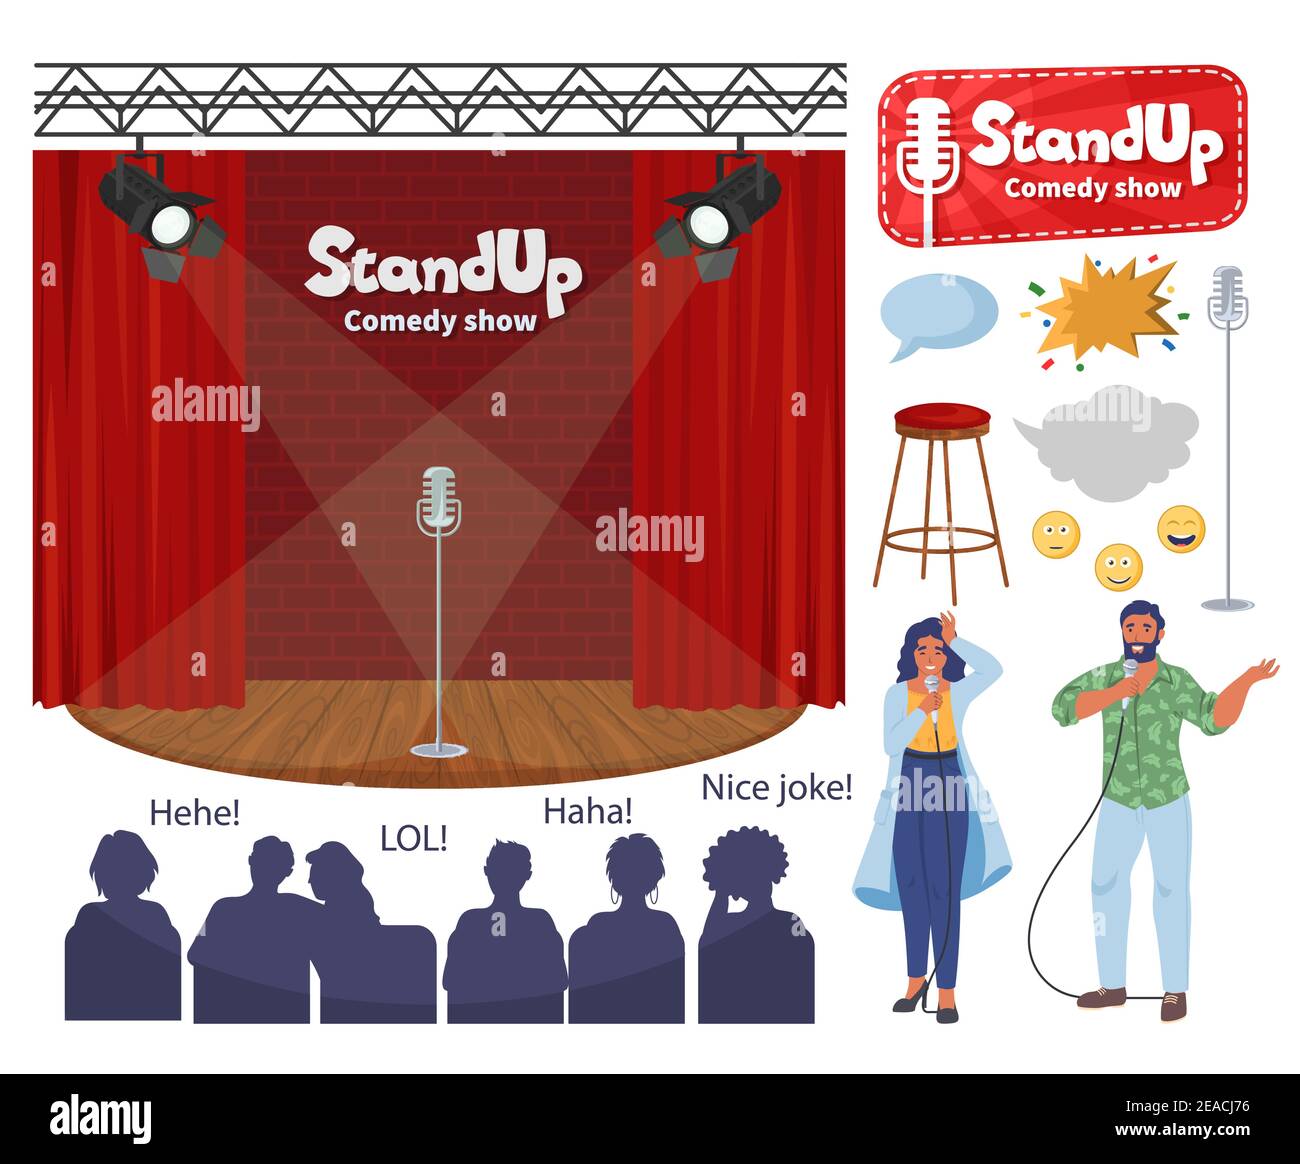 Stand up comique show Stage, personnages de dessin animé humoristiques avec microphones, illustration vectorielle plate pour le public. Comédie club Illustration de Vecteur